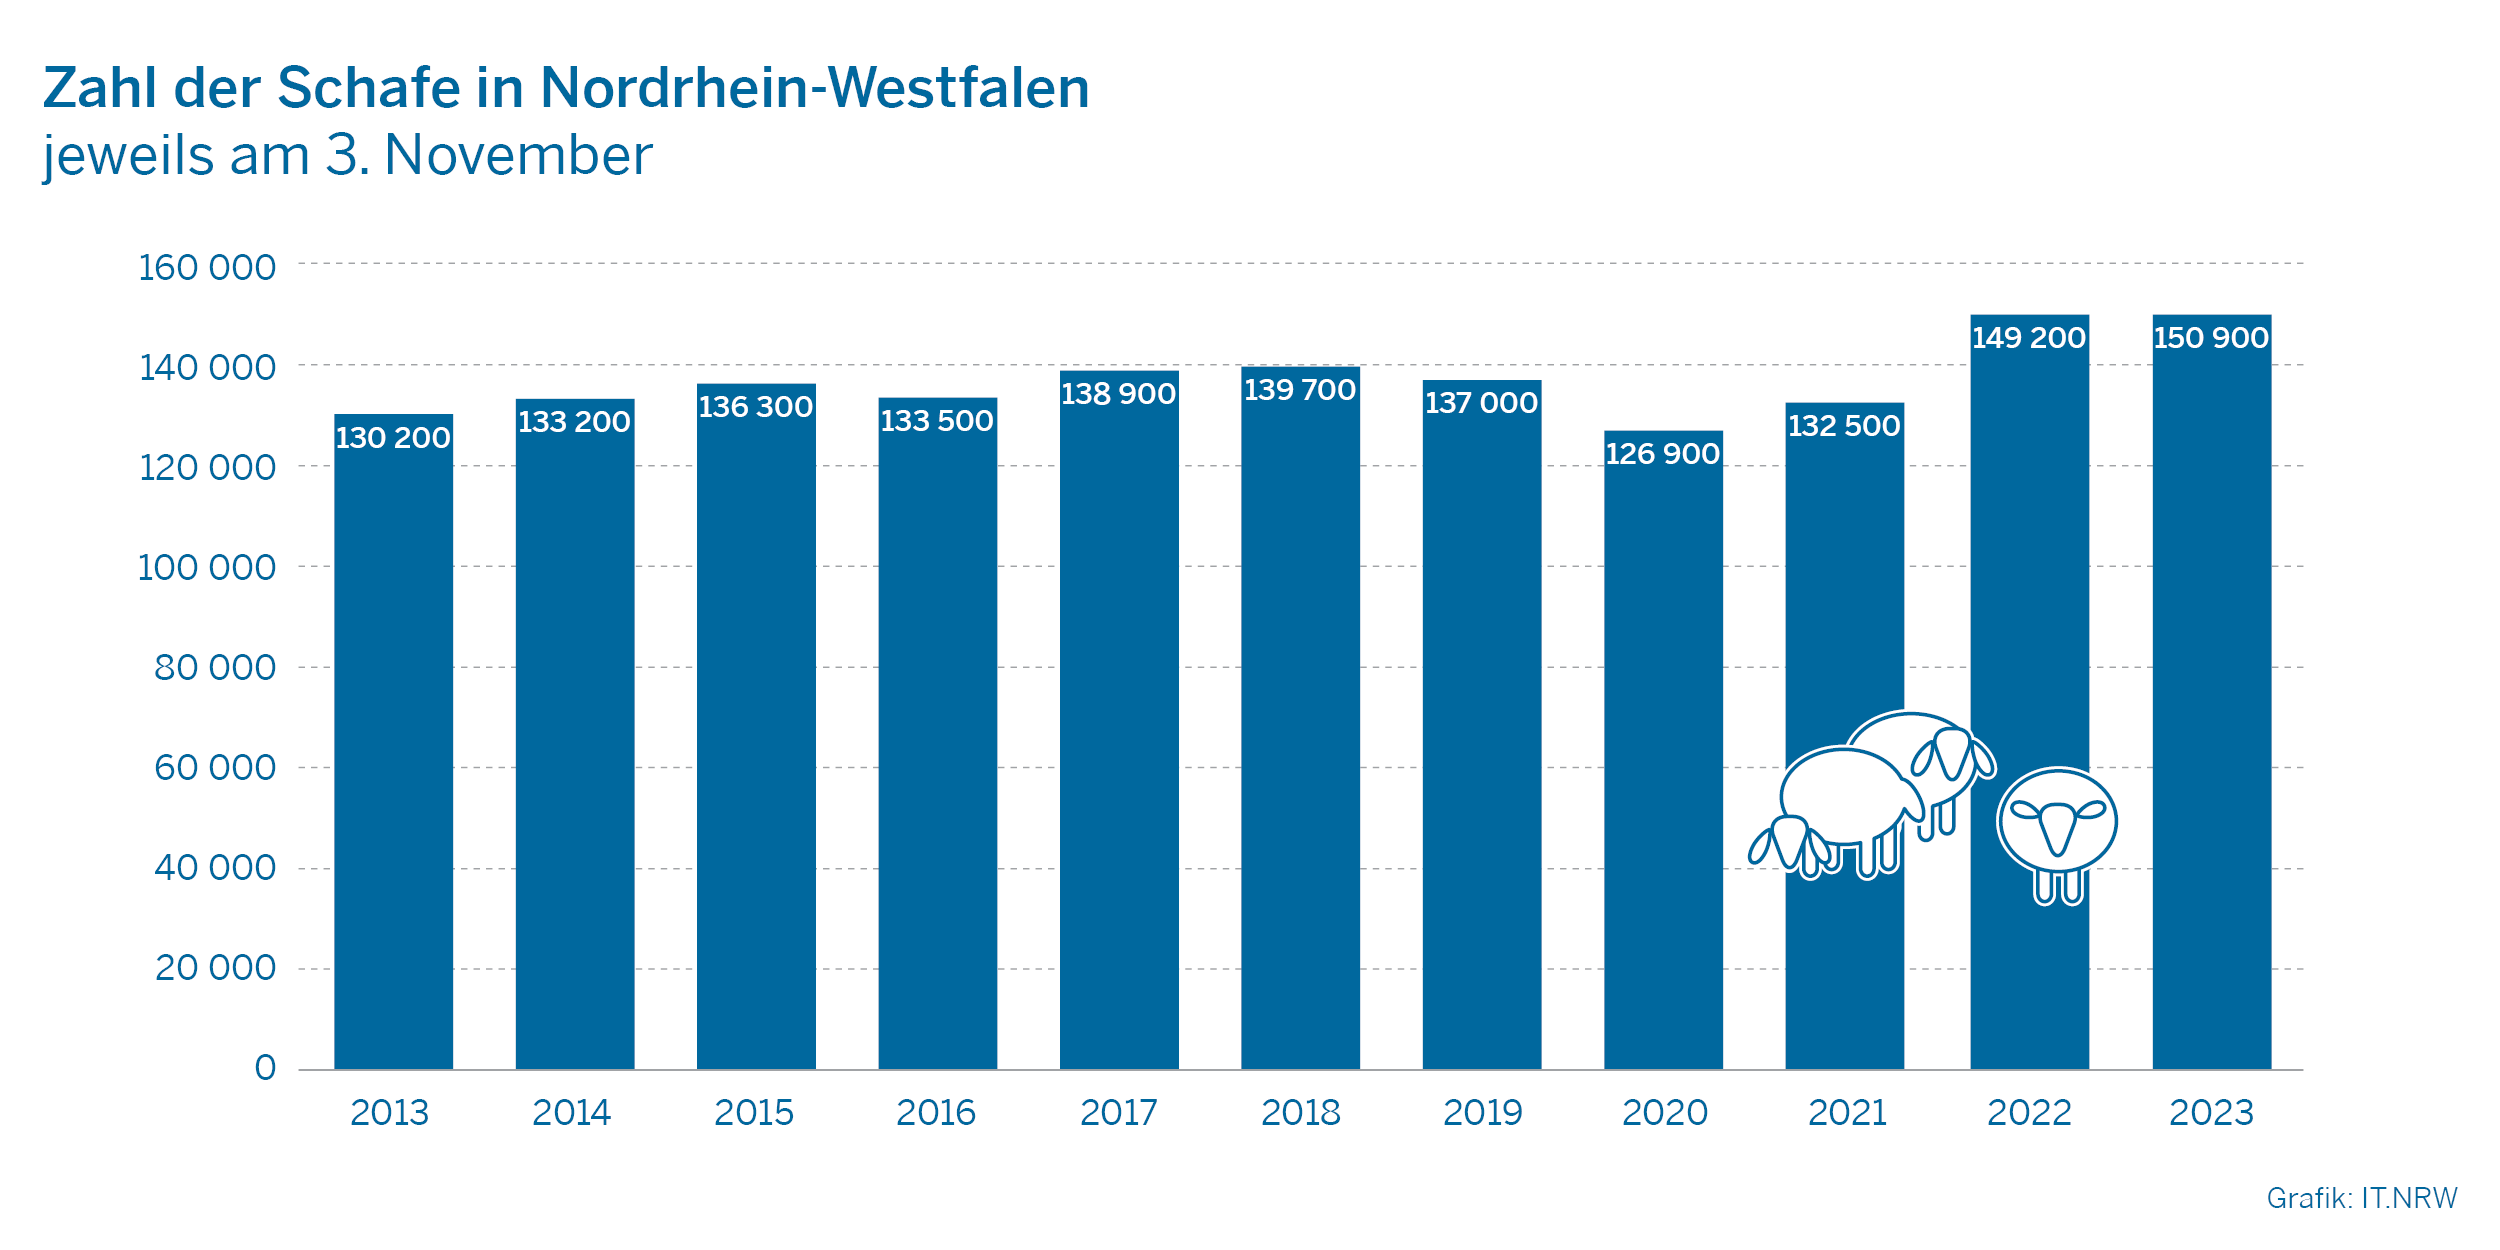 Zahl der Schafe in Nordrhein-Westfalen